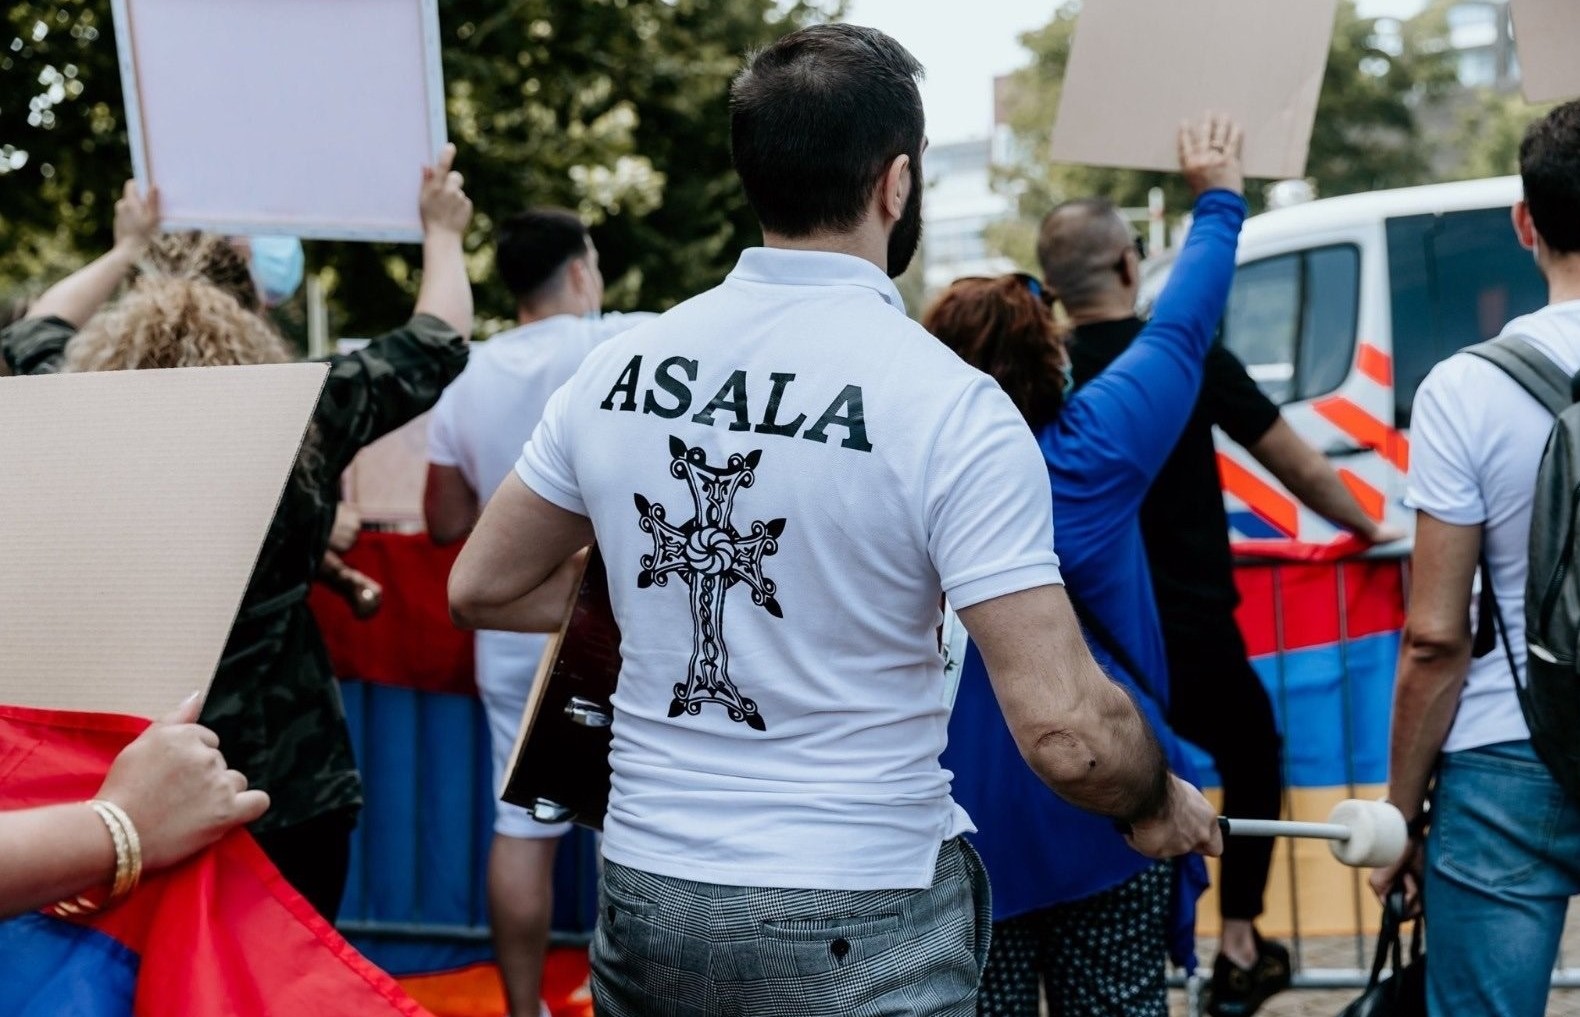 Baş Prokurorluq "ASALA" terror təşkilatının üzvlərinə qarşı cinayət işi açdı